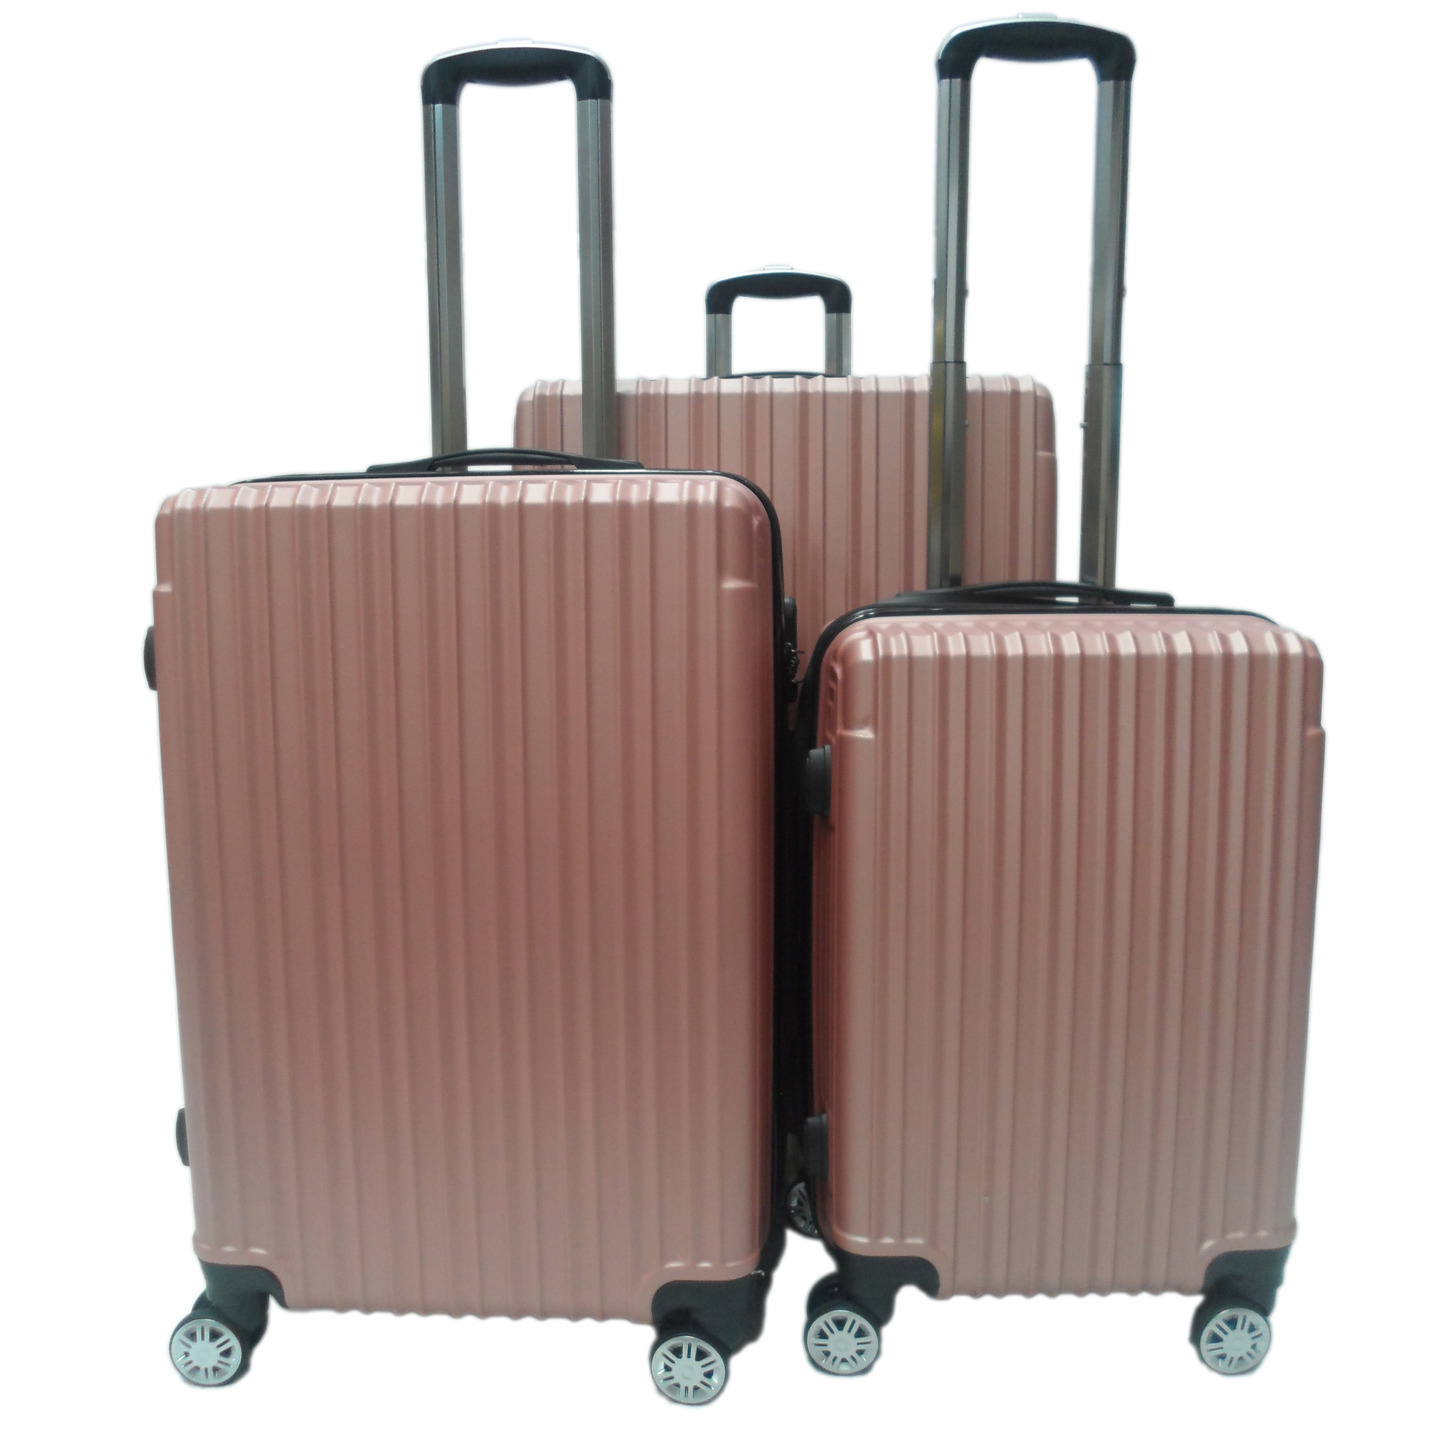 RV-60 Elegant Hard Box Luggage - Rose Gold 20inch, 24 inch, 28 inch